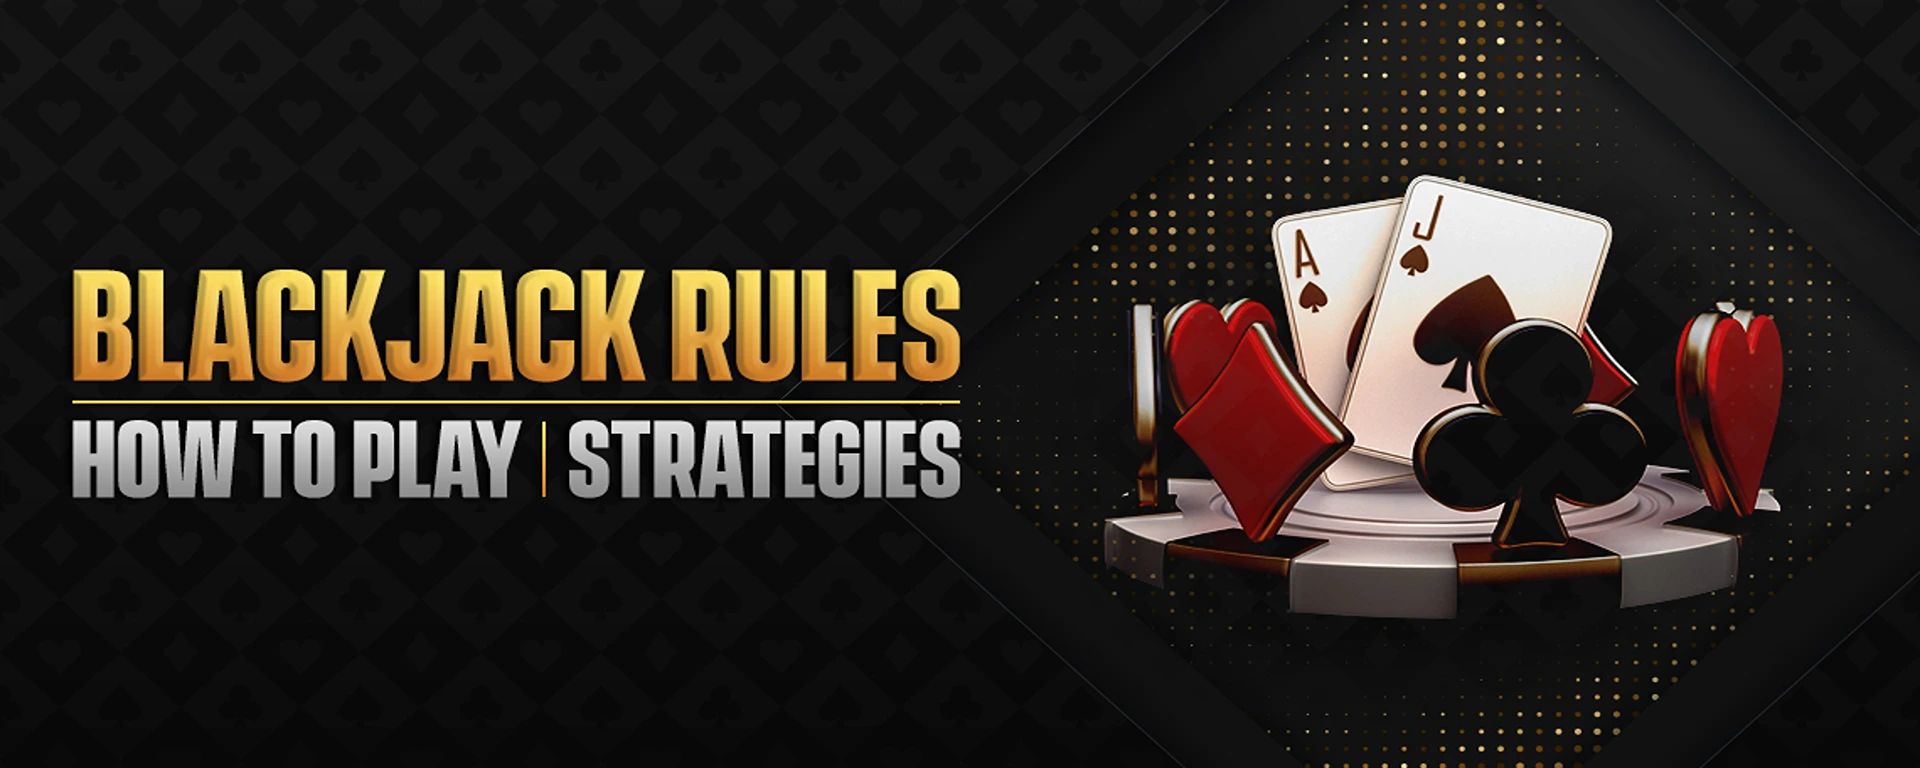 Blackjack Game Rules